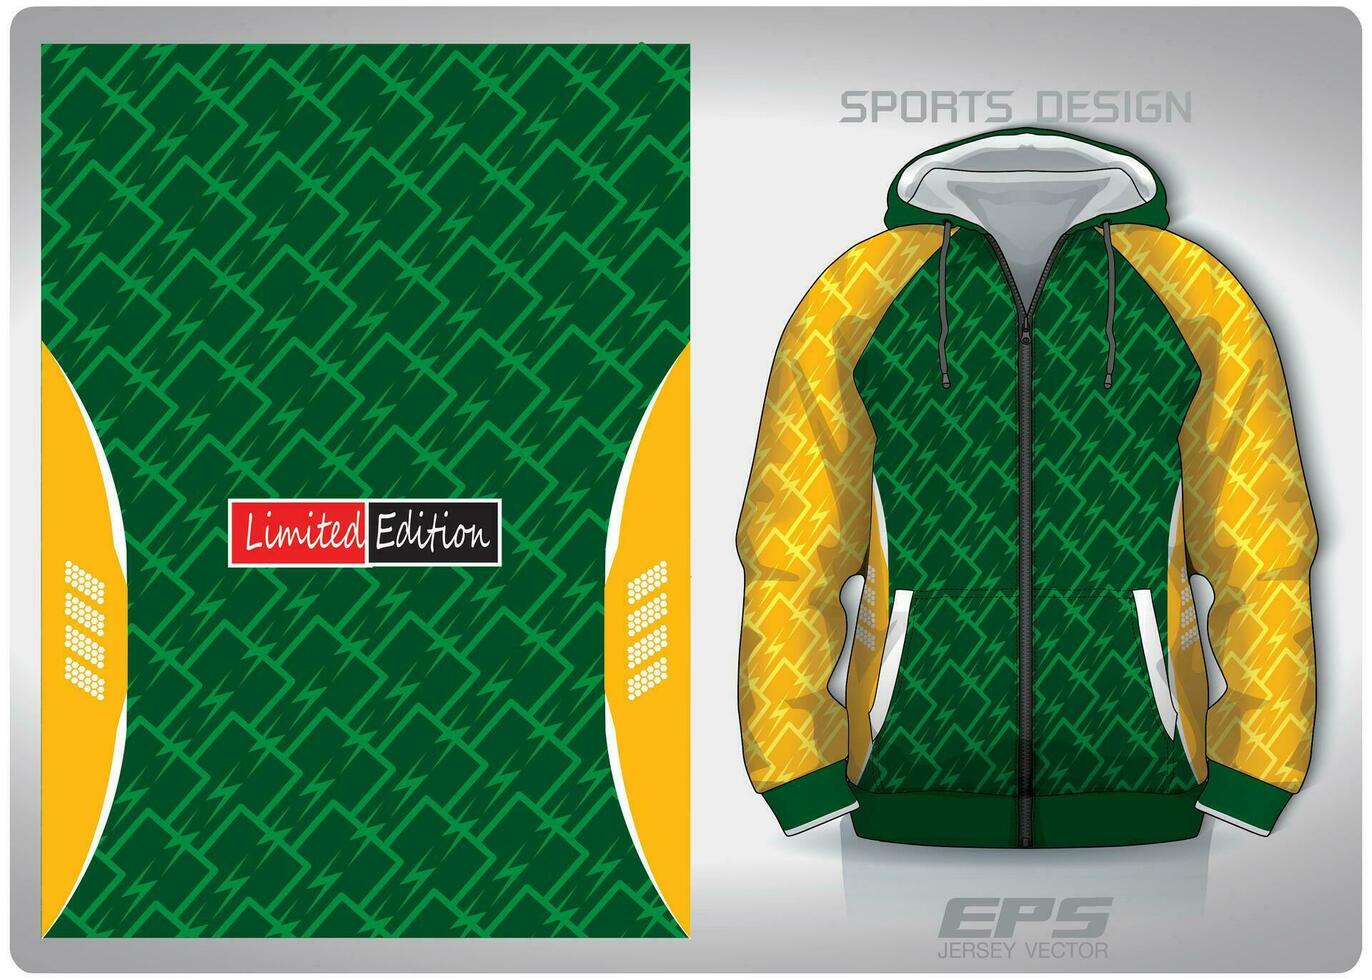 vektor sporter skjorta bakgrund bild.blixt i en rad grön gul mönster design, illustration, textil- bakgrund för sporter lång ärm luvtröja, jersey luvtröja